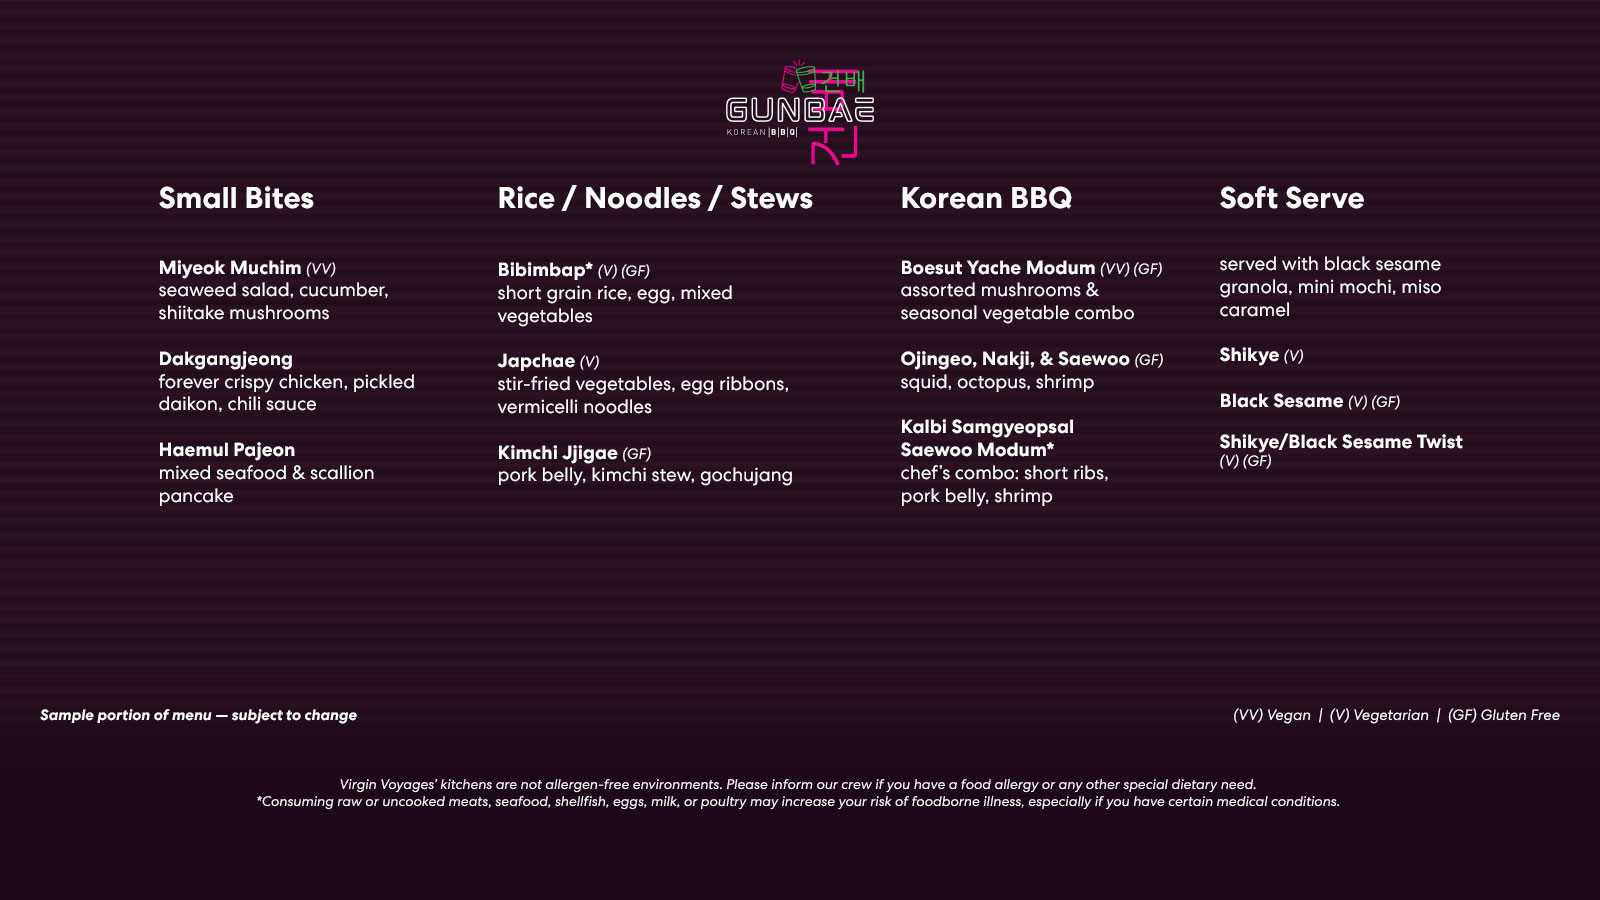 201201-IMG-FNB-gunbae-web-menu-preview-1